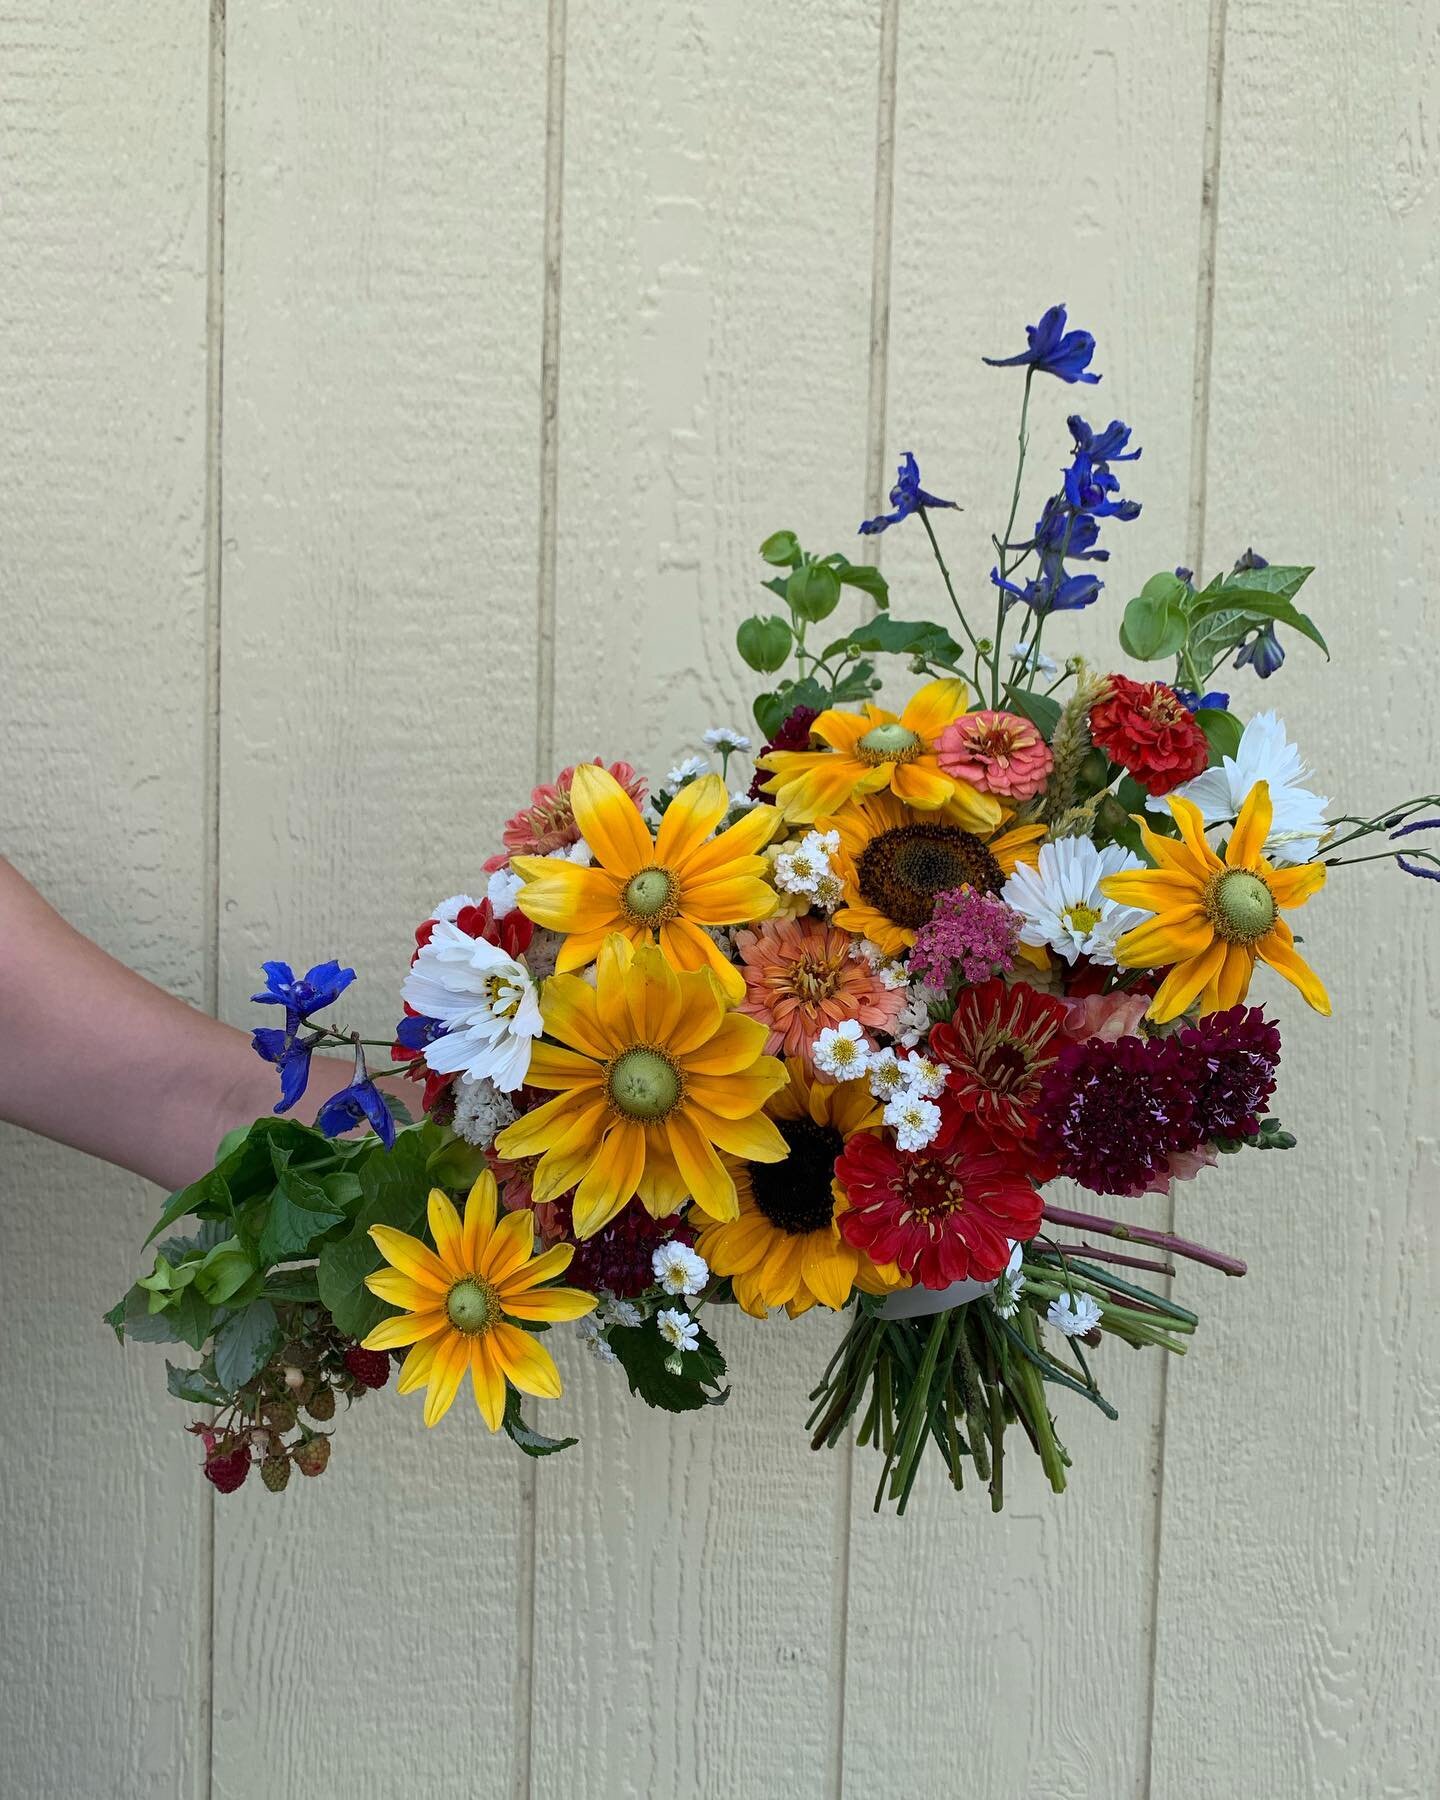 Wildflower Weddings ❤️❤️❤️

#wildflowers #weddingflowers #bridal #bridalbouquet #localflowers #farmtotable